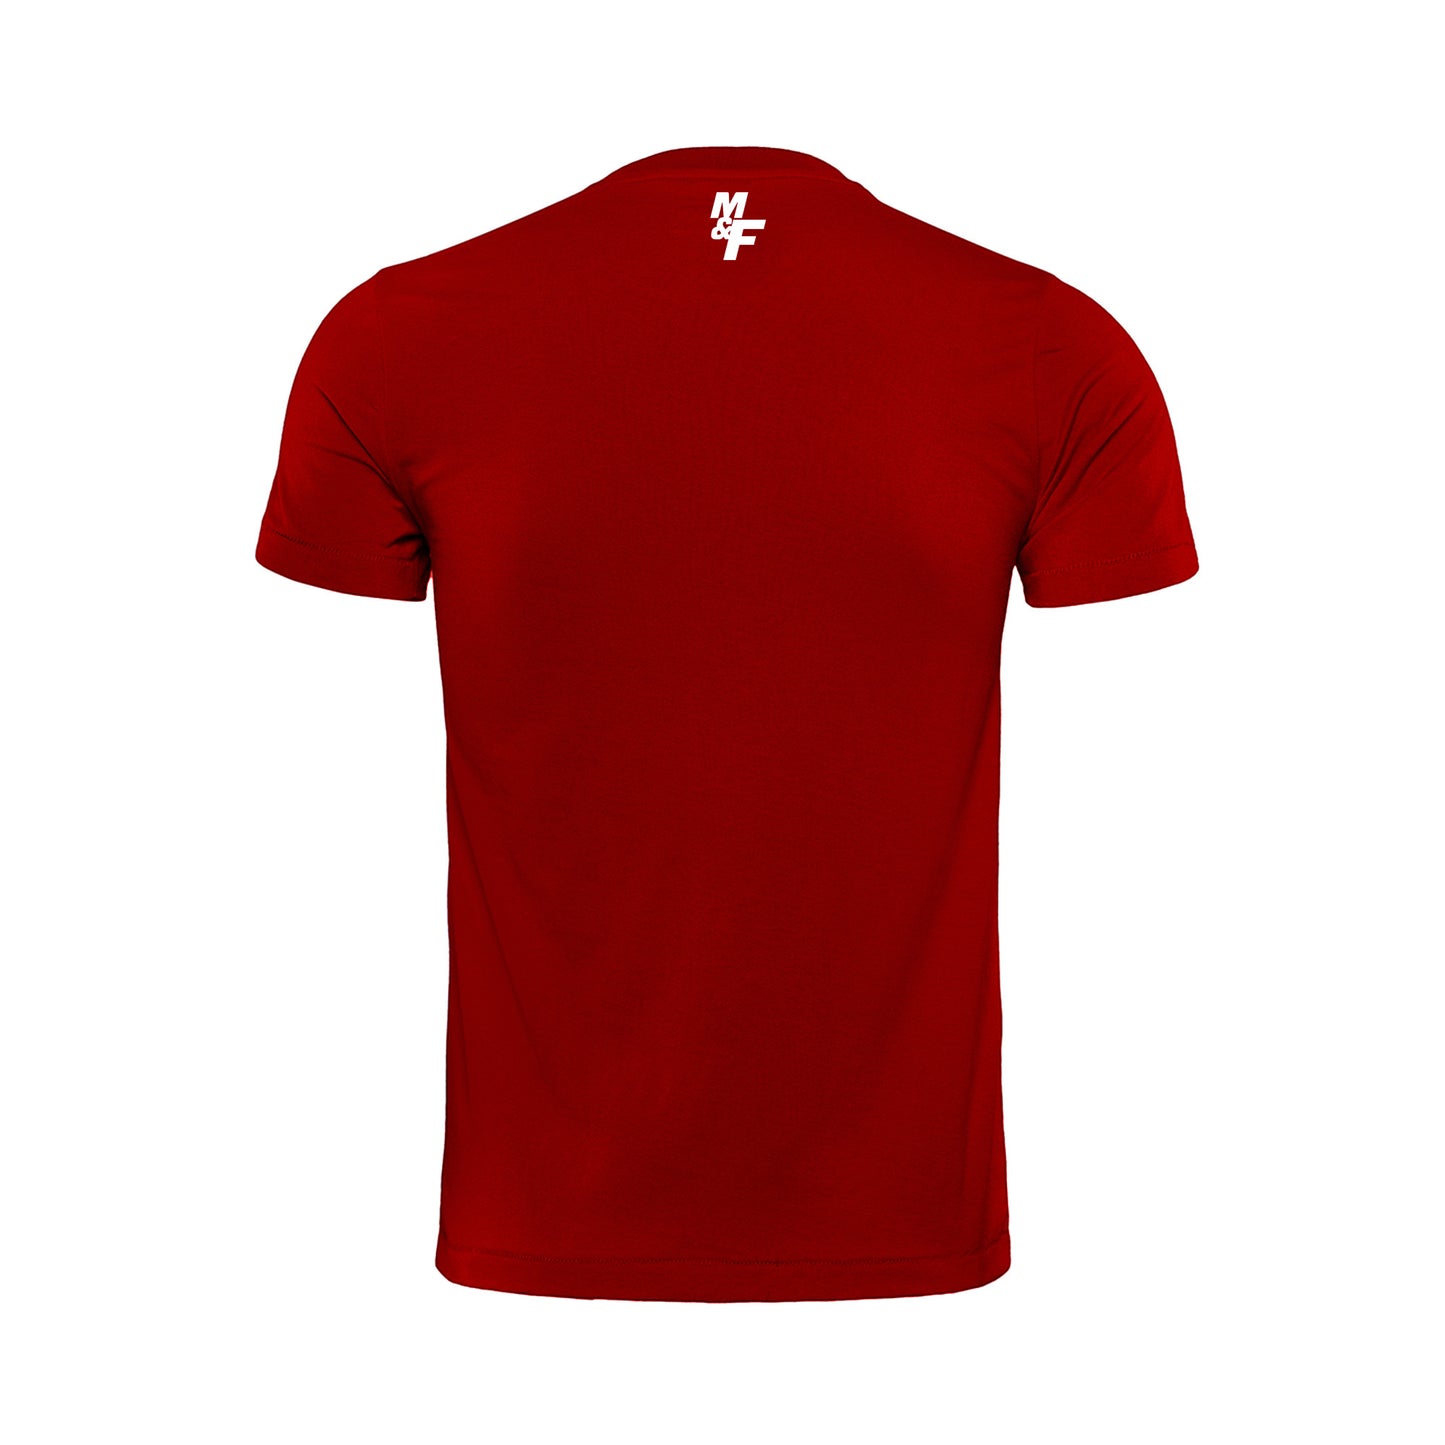 Camiseta M & F Roja